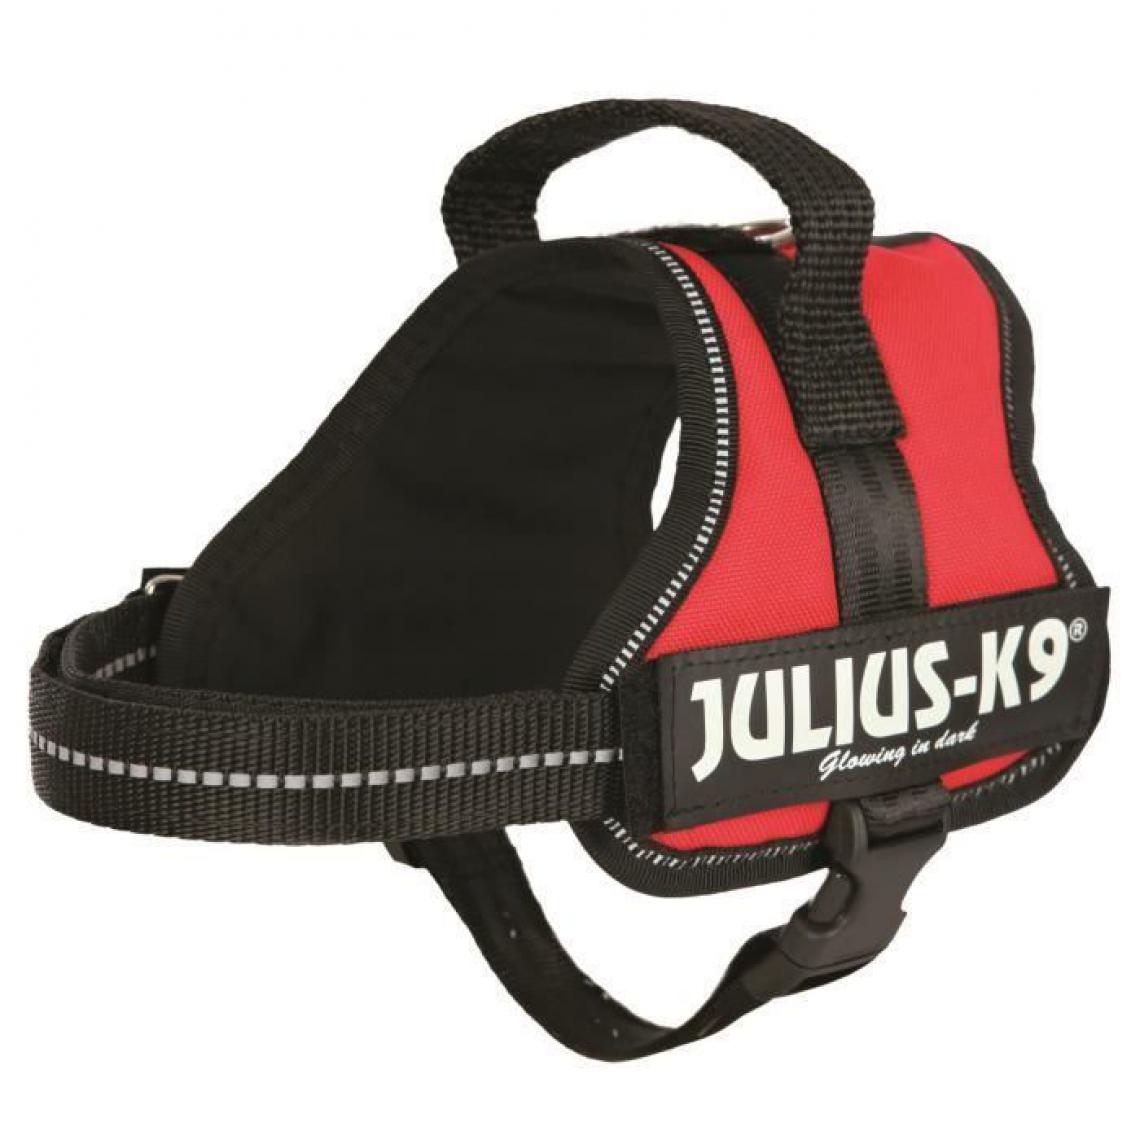 Julius K9 - Harnais Power Julius-K9 - Mini-Mini - S : 40-53 cm-22 mm - Rouge - Pour chien - Equipement de transport pour chien